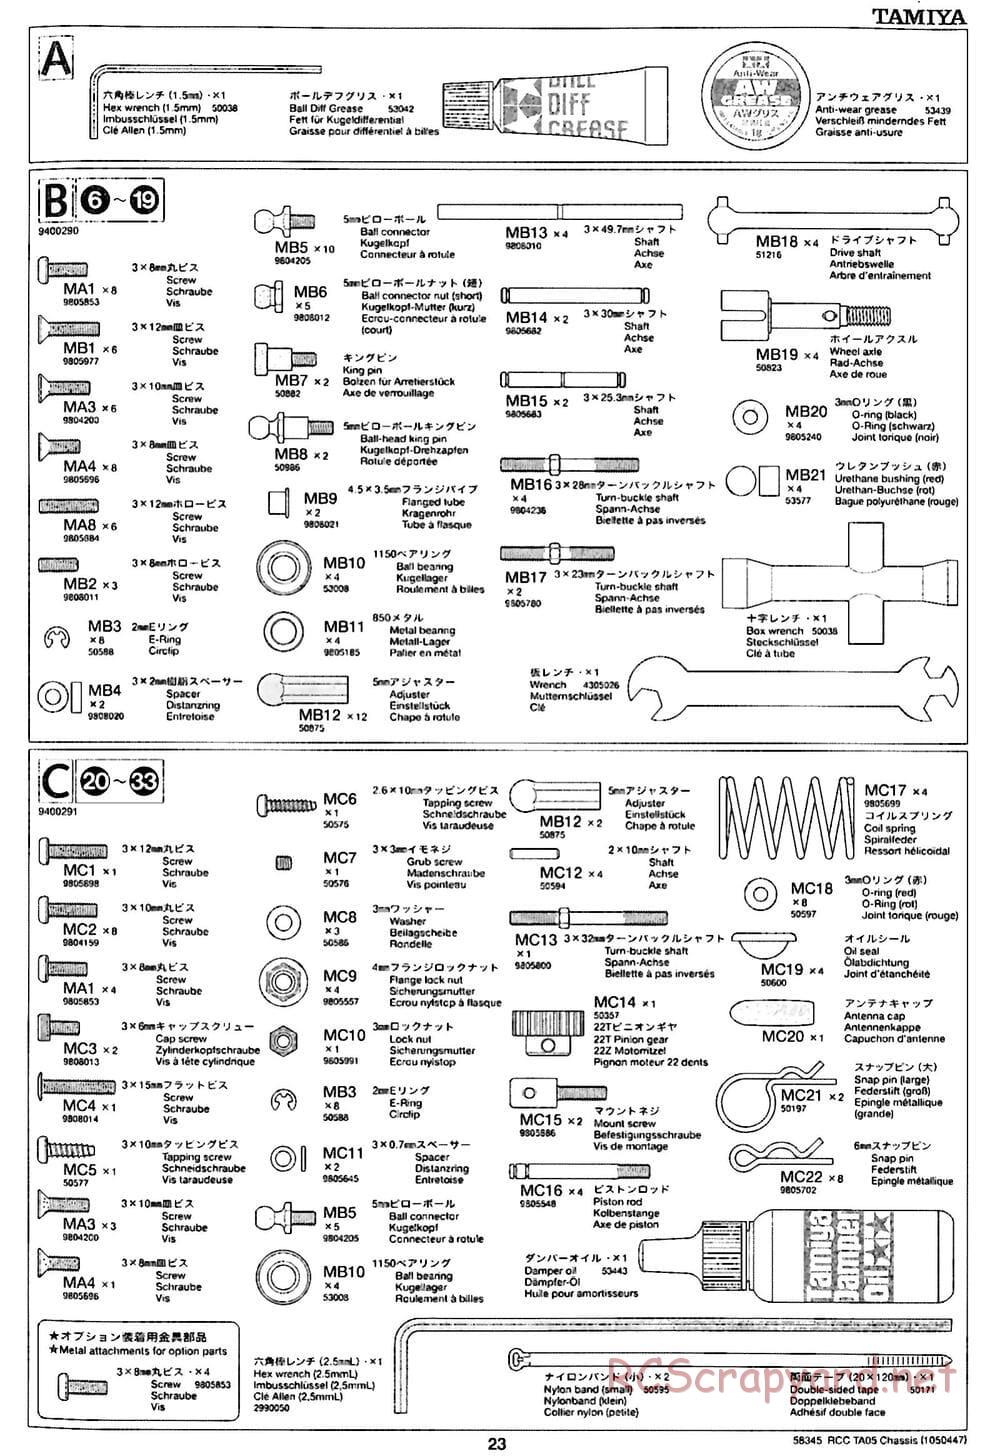 Tamiya - TA05 Chassis - Manual - Page 23